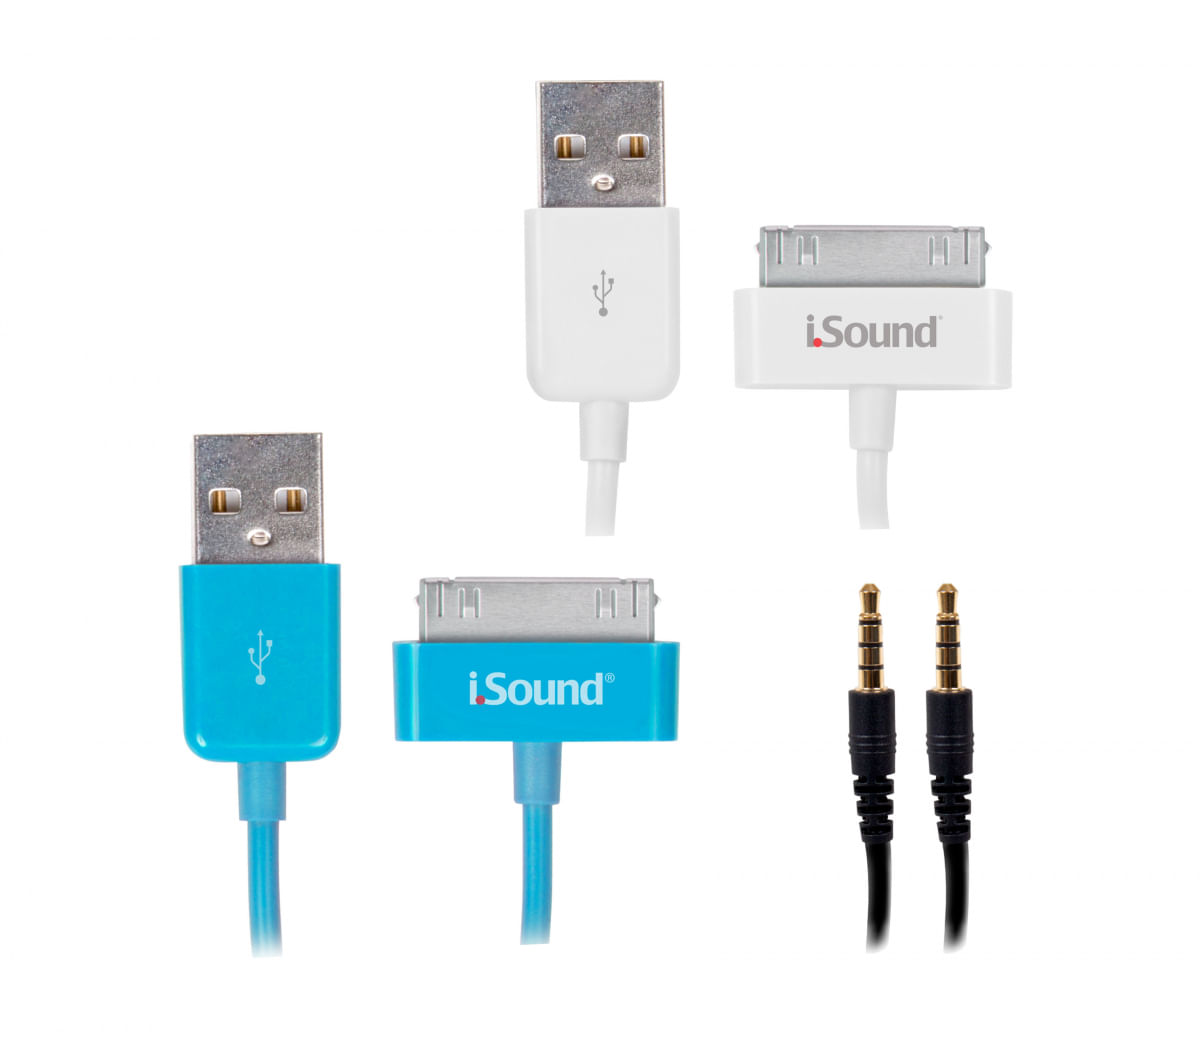 Kit com cabos para carga, sincronismo e áudio de iPad, iPhone ou iPod